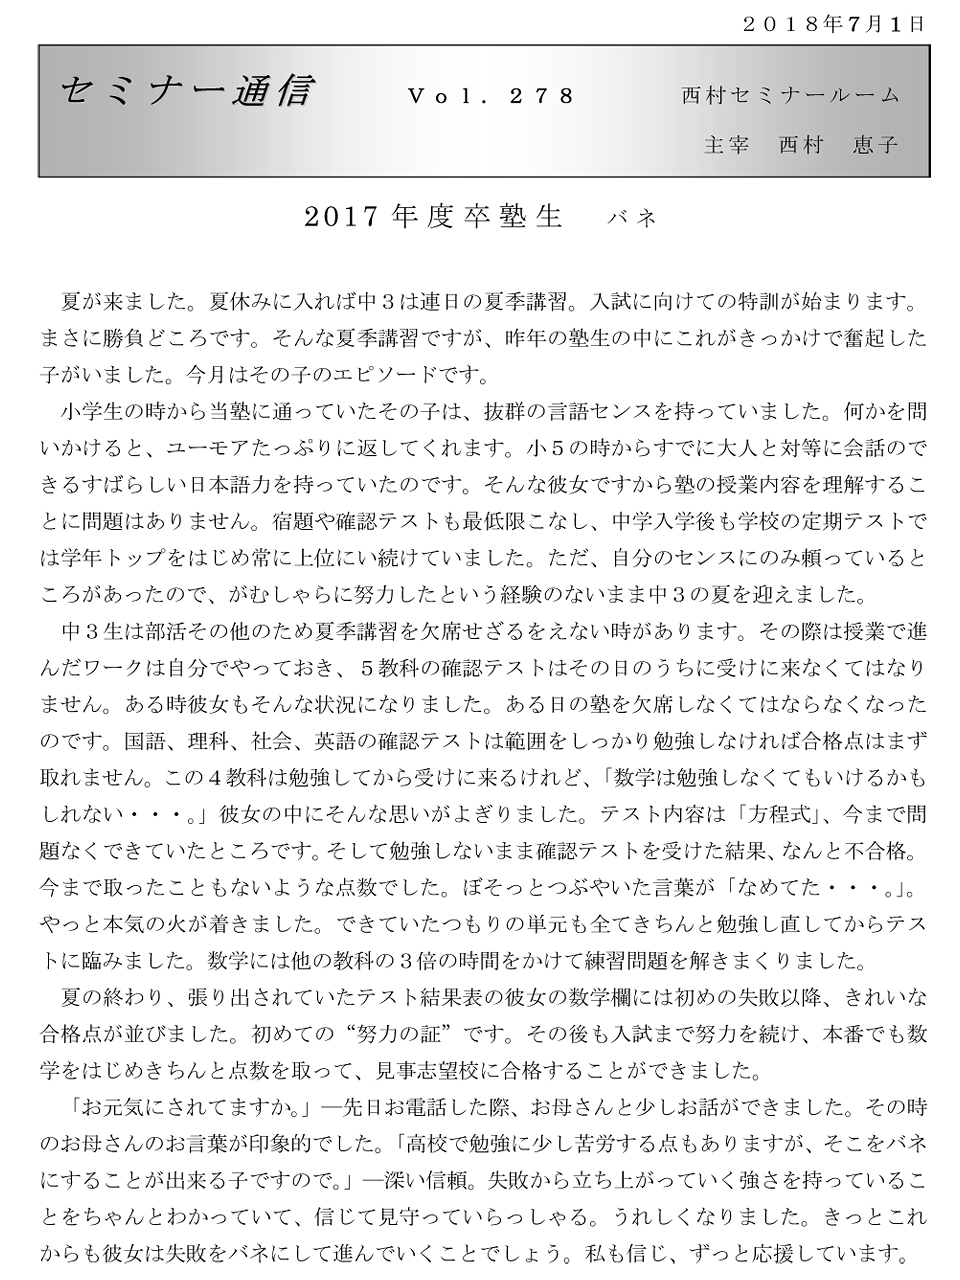 セミナー通信278号「2017年度卒塾生 バネ」